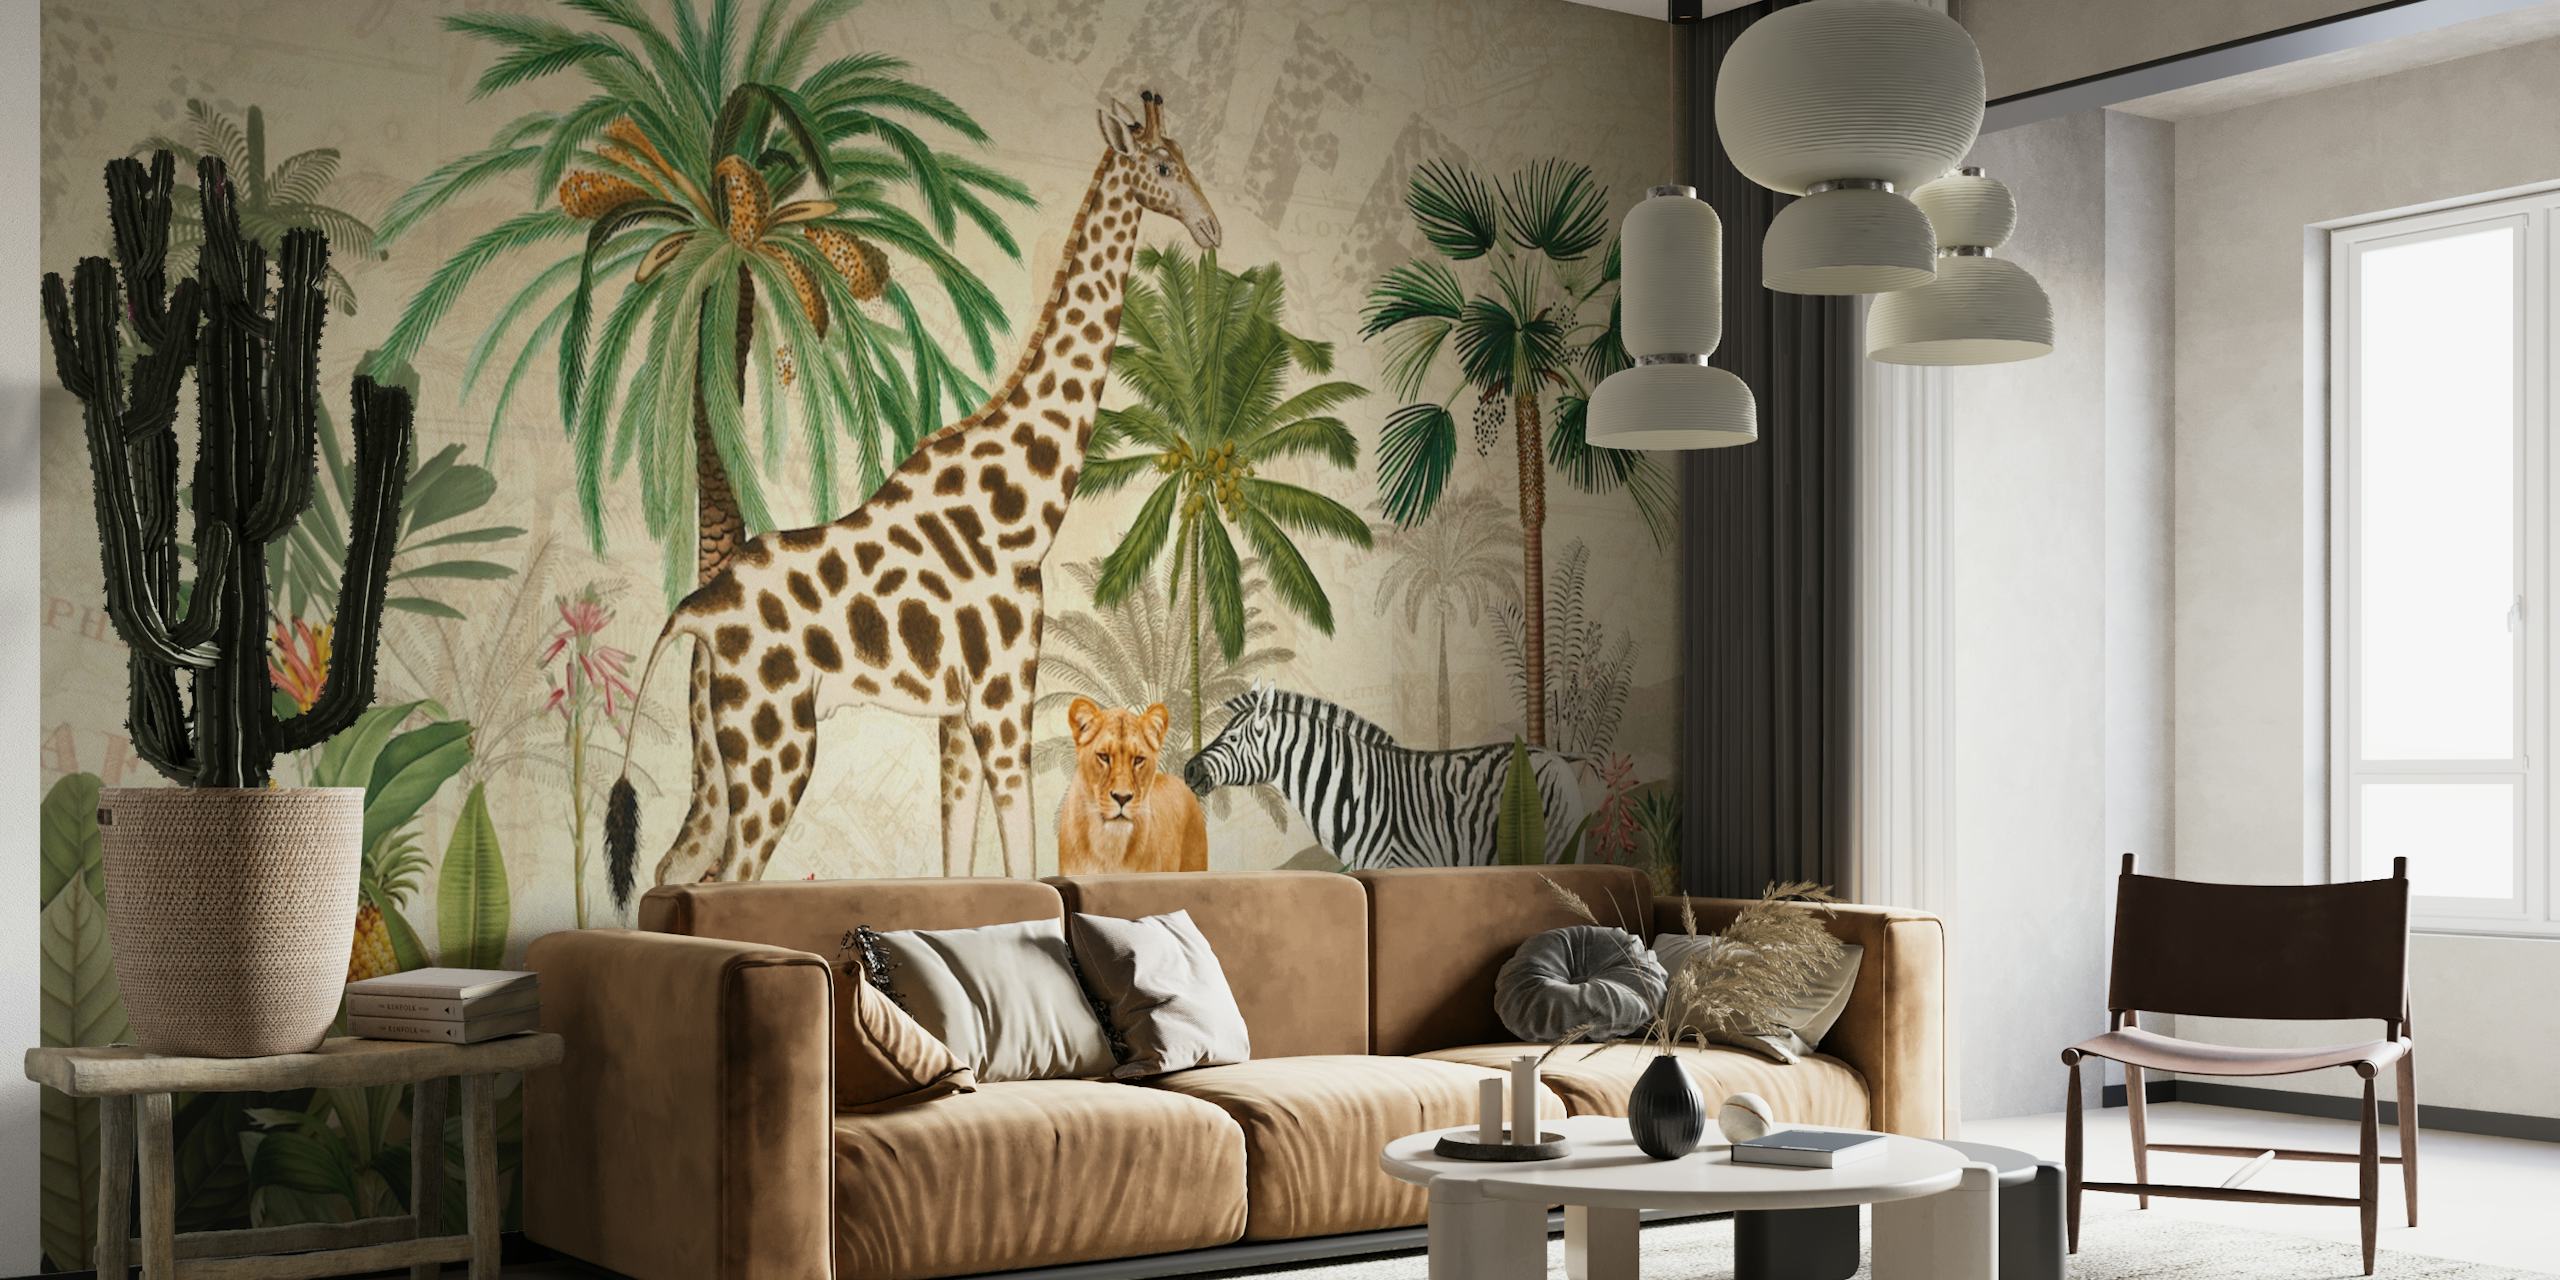 Mural de estilo vintage de safari en la jungla con jirafas, leopardos y cebras en un entorno exuberante